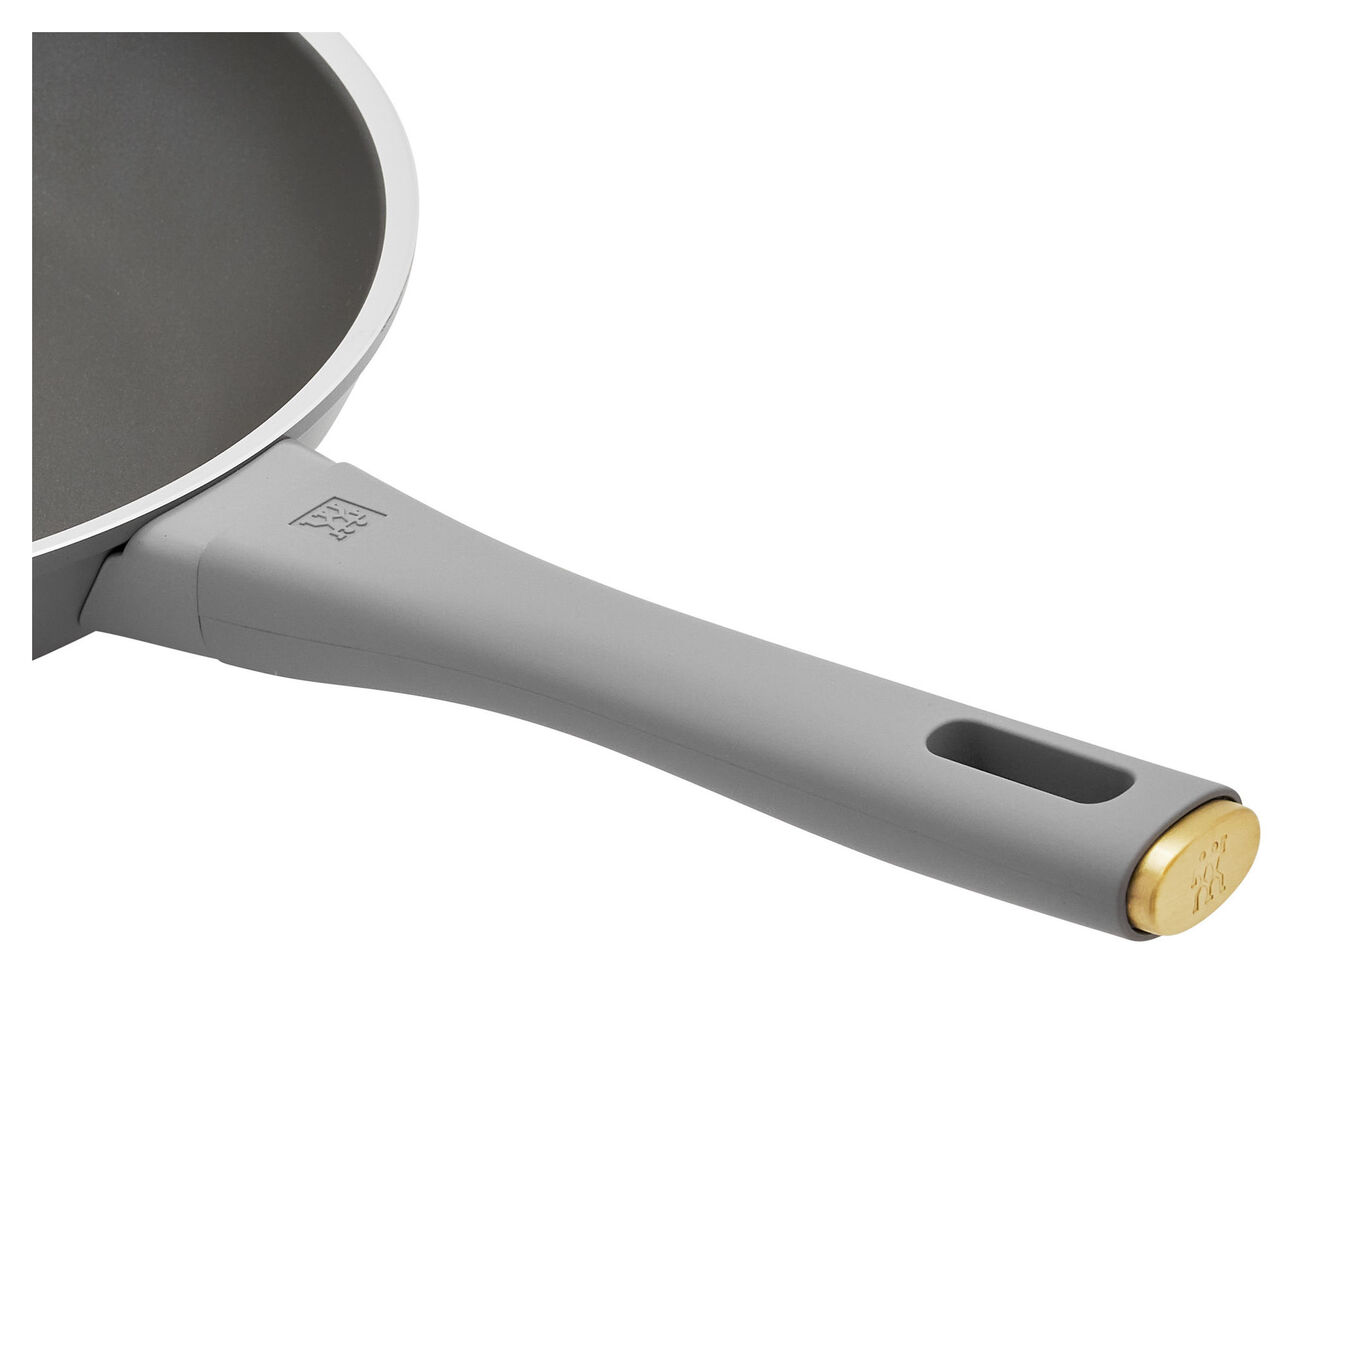 26 cm / 10 inch aluminium Frying pan,,large 5